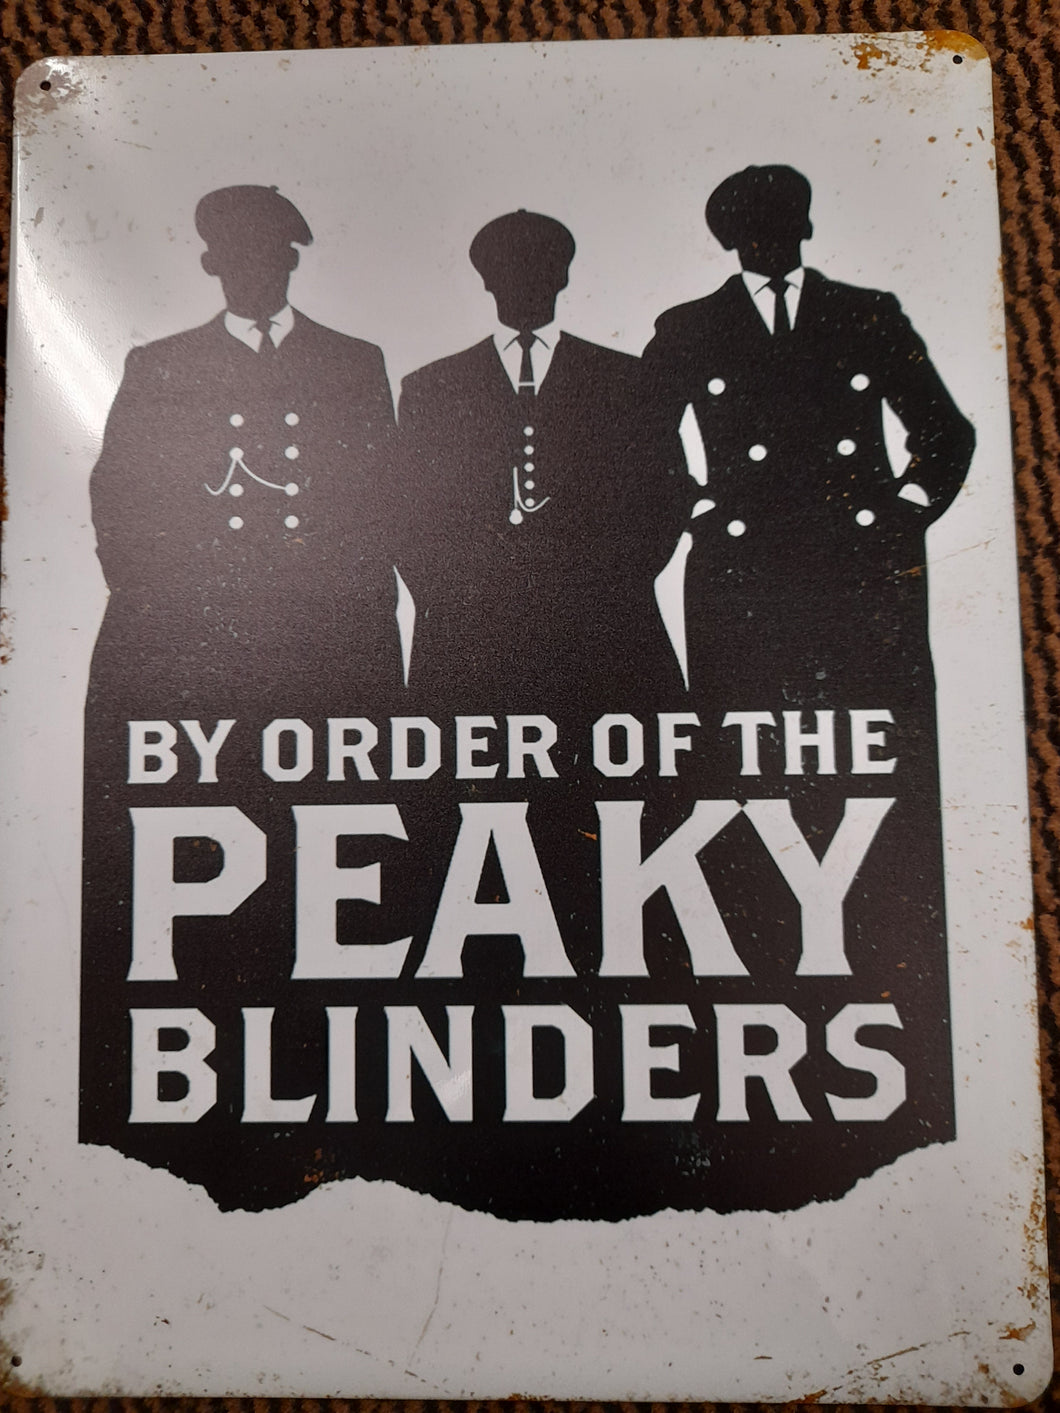 Vintage style metal sign - by order of the peaky blinders